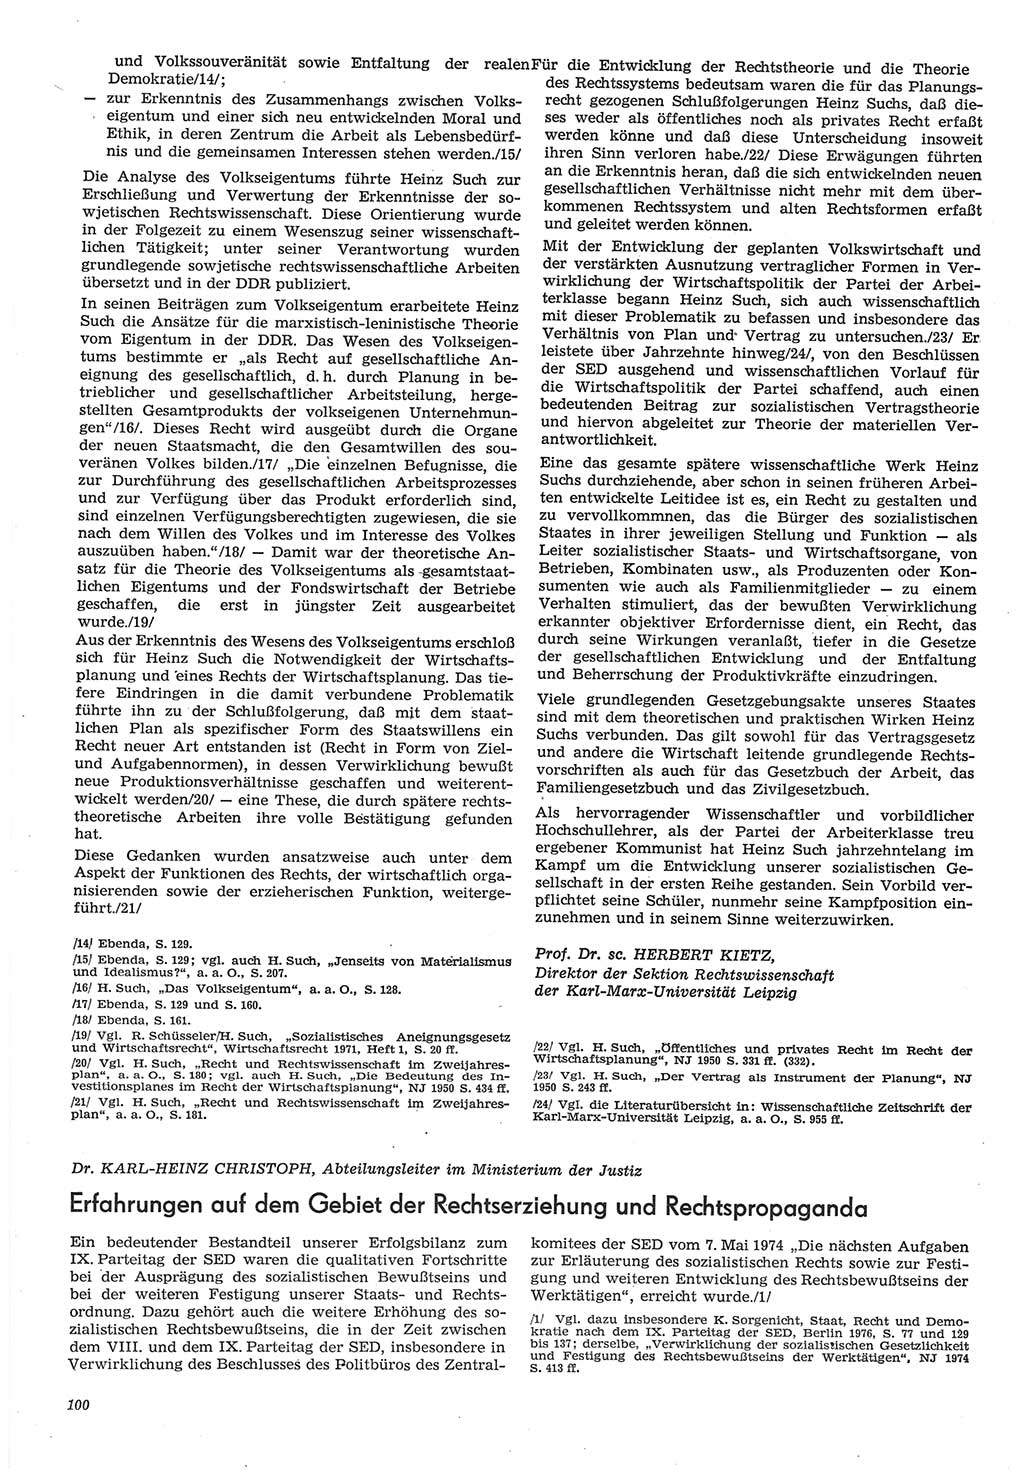 Neue Justiz (NJ), Zeitschrift für Recht und Rechtswissenschaft-Zeitschrift, sozialistisches Recht und Gesetzlichkeit, 31. Jahrgang 1977, Seite 100 (NJ DDR 1977, S. 100)